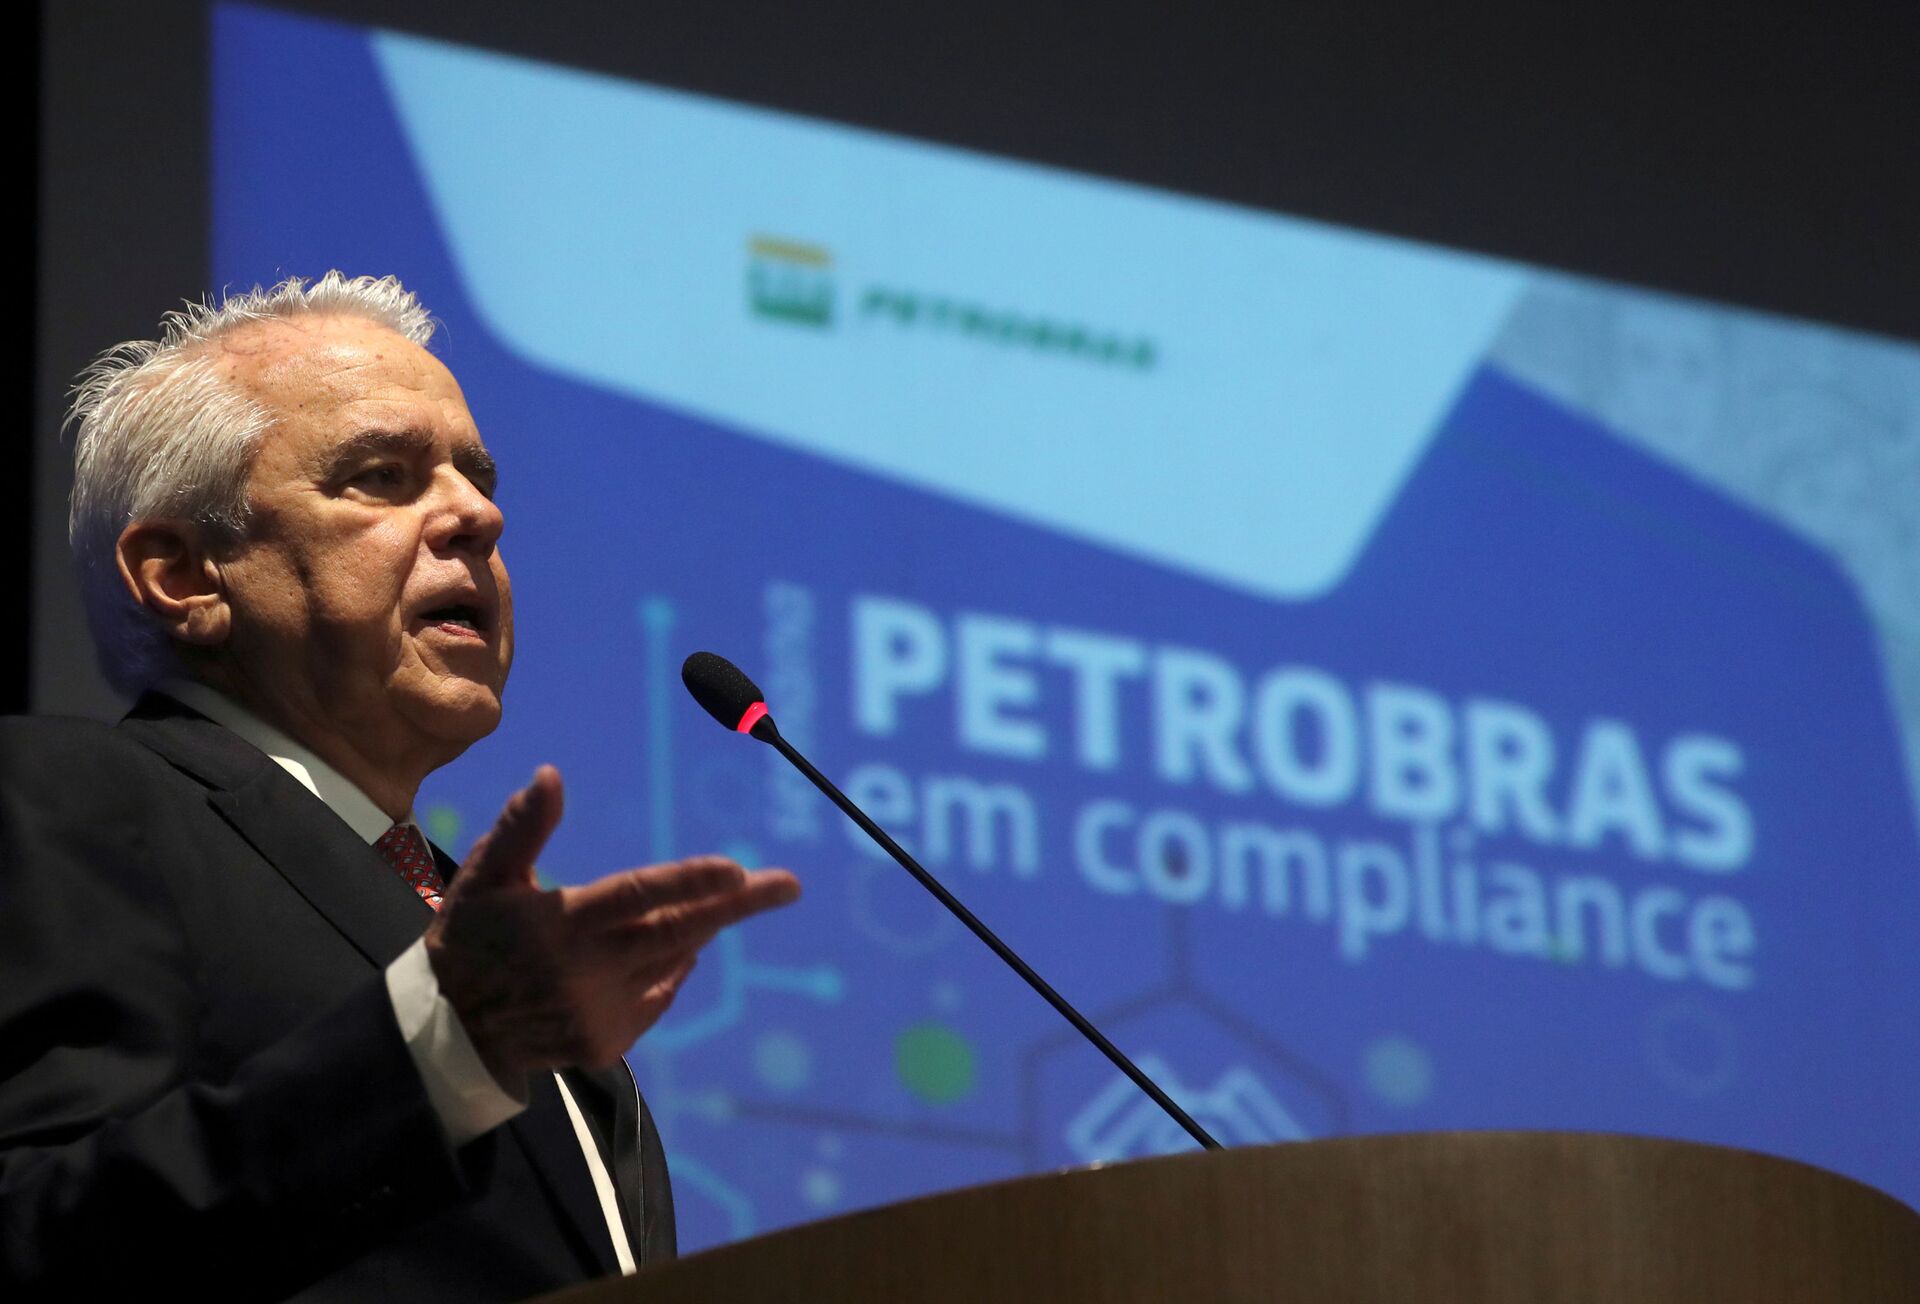 Petrobras anuncia 5º aumento do preço da gasolina no ano - Sputnik Brasil, 1920, 01.03.2021